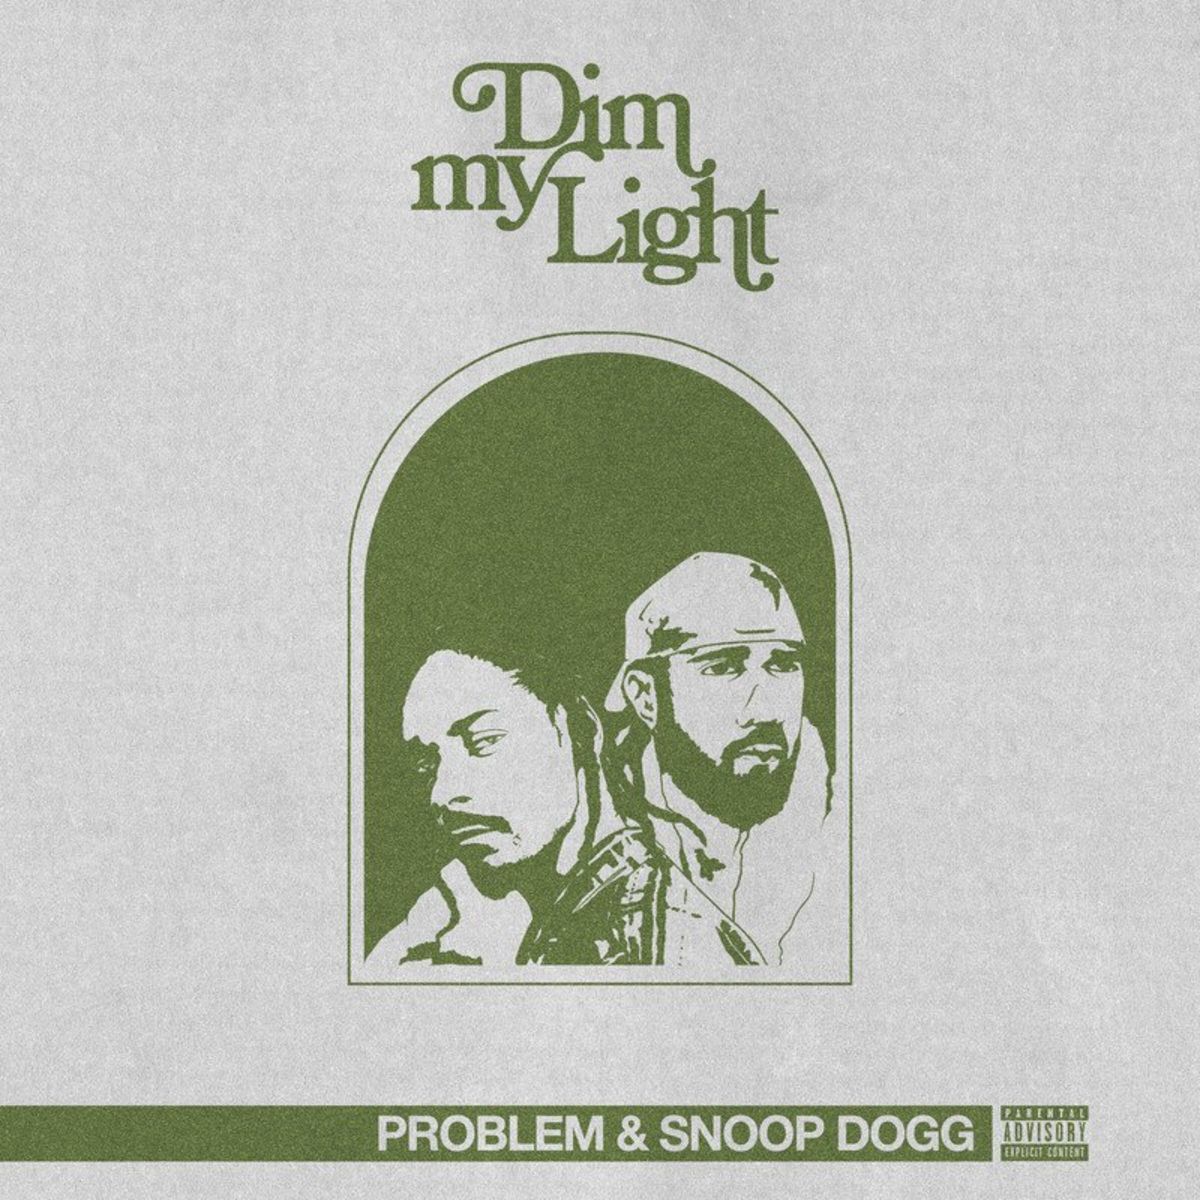 Problem & Snoop Dogg - Dim My Light.mp3